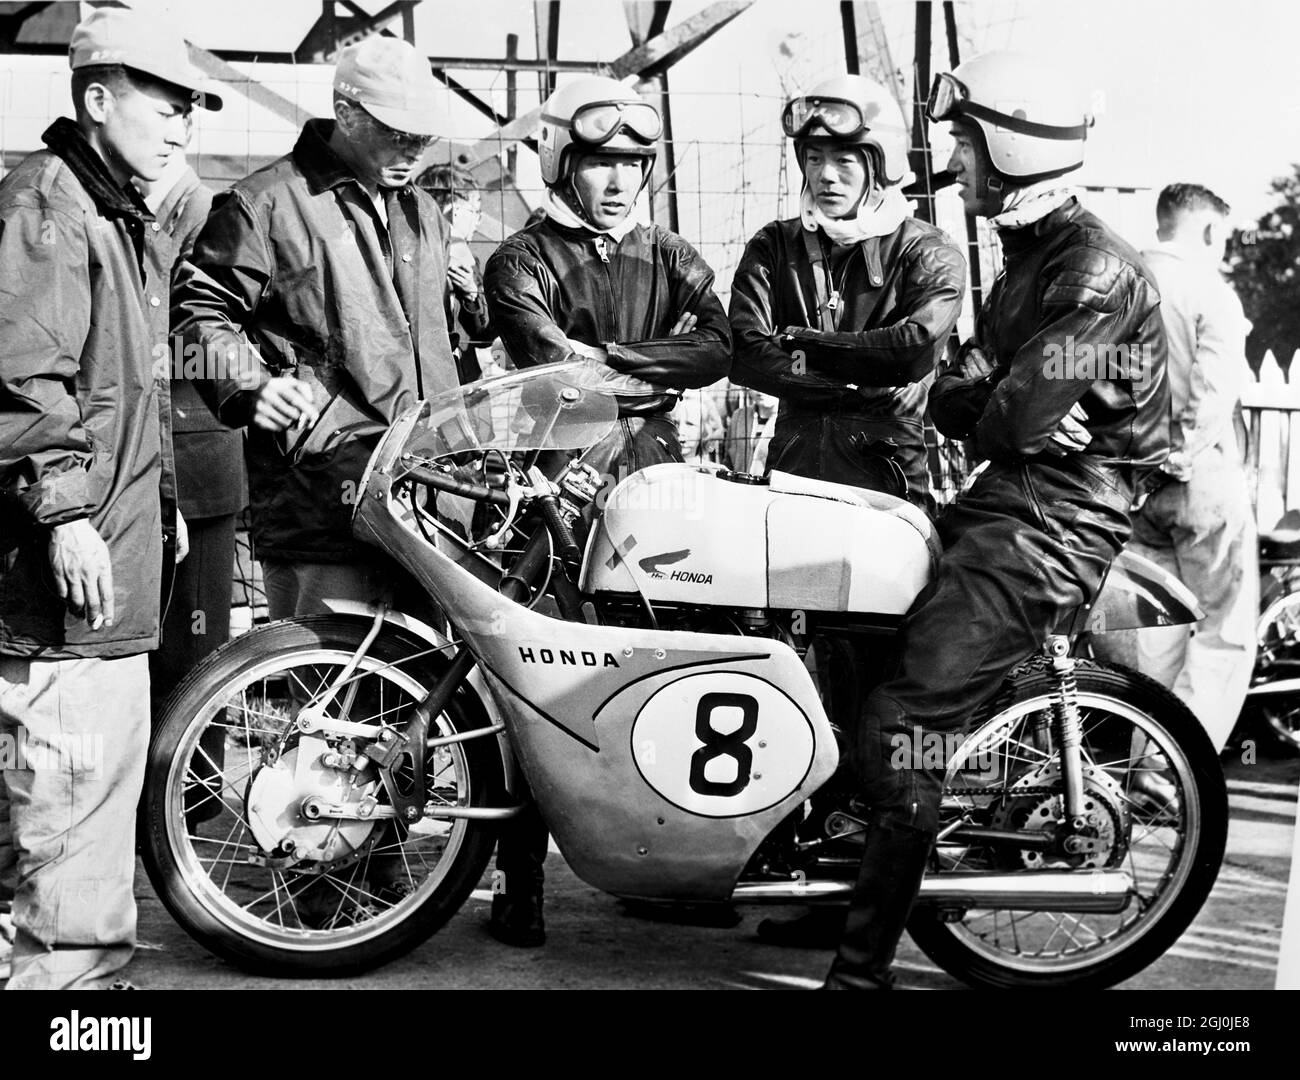 Isle of Man: I membri della squadra giapponese, qui per competere nelle gare TT, chiacchierano con i meccanici dopo la loro prima pratica ufficiale. Stanno guidando le macchine giapponesi Honda, 125cc nelle corse. 27 maggio 1959 Foto Stock